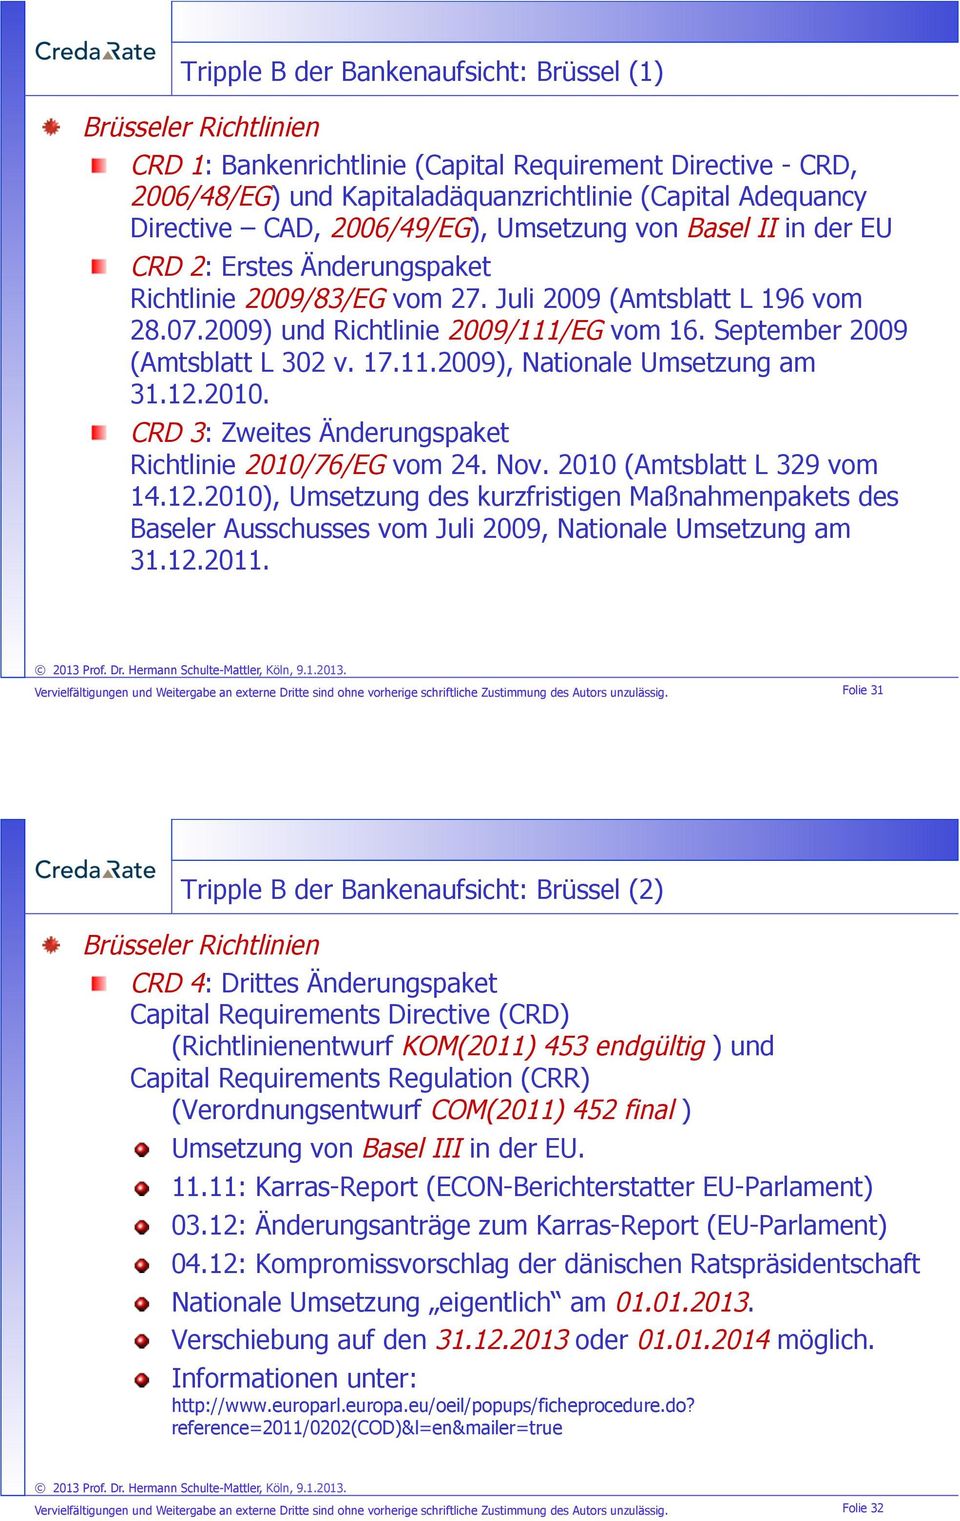 CRD 2: Erstes Änderungspaket Richtlinie 2009/83/EG vom 27. Juli 2009 (Amtsblatt L 196 vom 28.07.2009) und Richtlinie 2009/111/EG vom 16. September 2009 (Amtsblatt L 302 v. 17.11.2009), Nationale Umsetzung am 31.